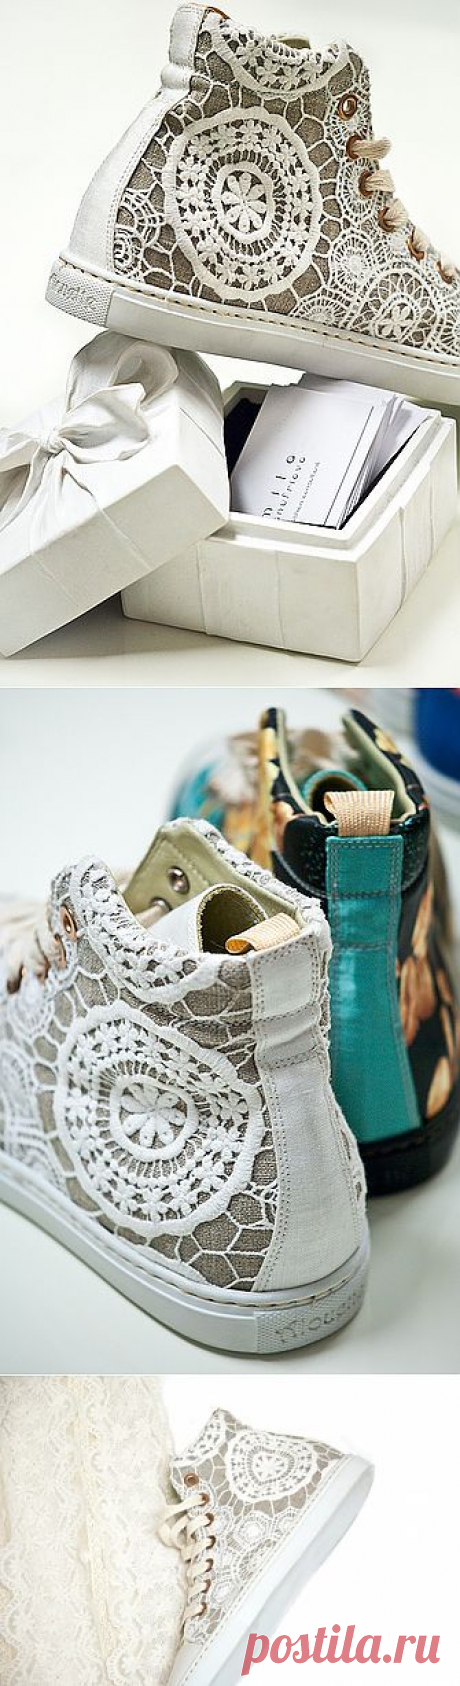 Кружевные кеды (трафик) / Обувь / Модный сайт о стильной переделке одежды и интерьера